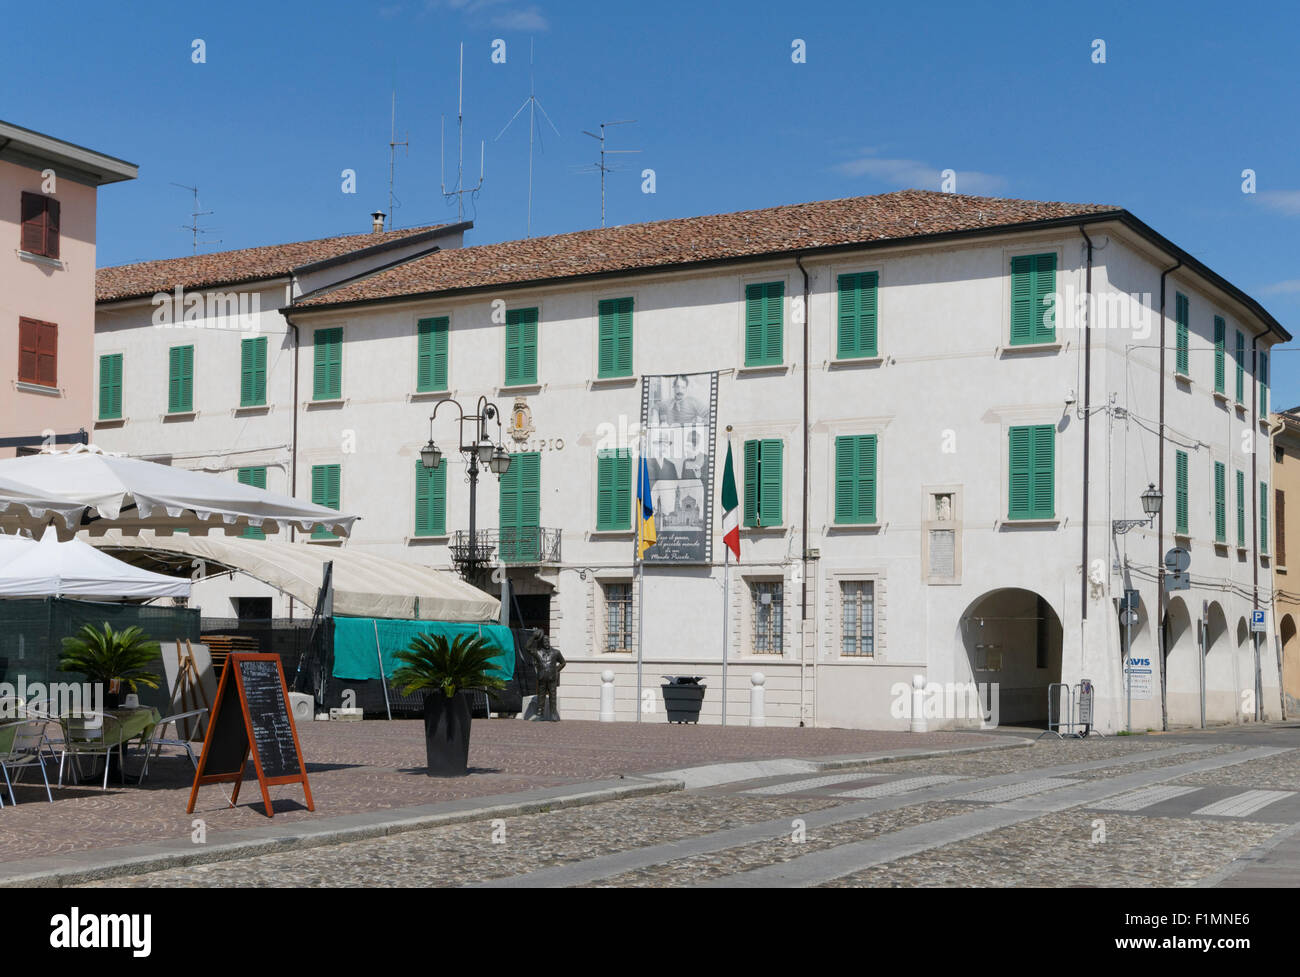 town hall in Piazza Matteotti, Brescello, Reggio Emilia province, Emilia Romagna, Italy Stock Photo